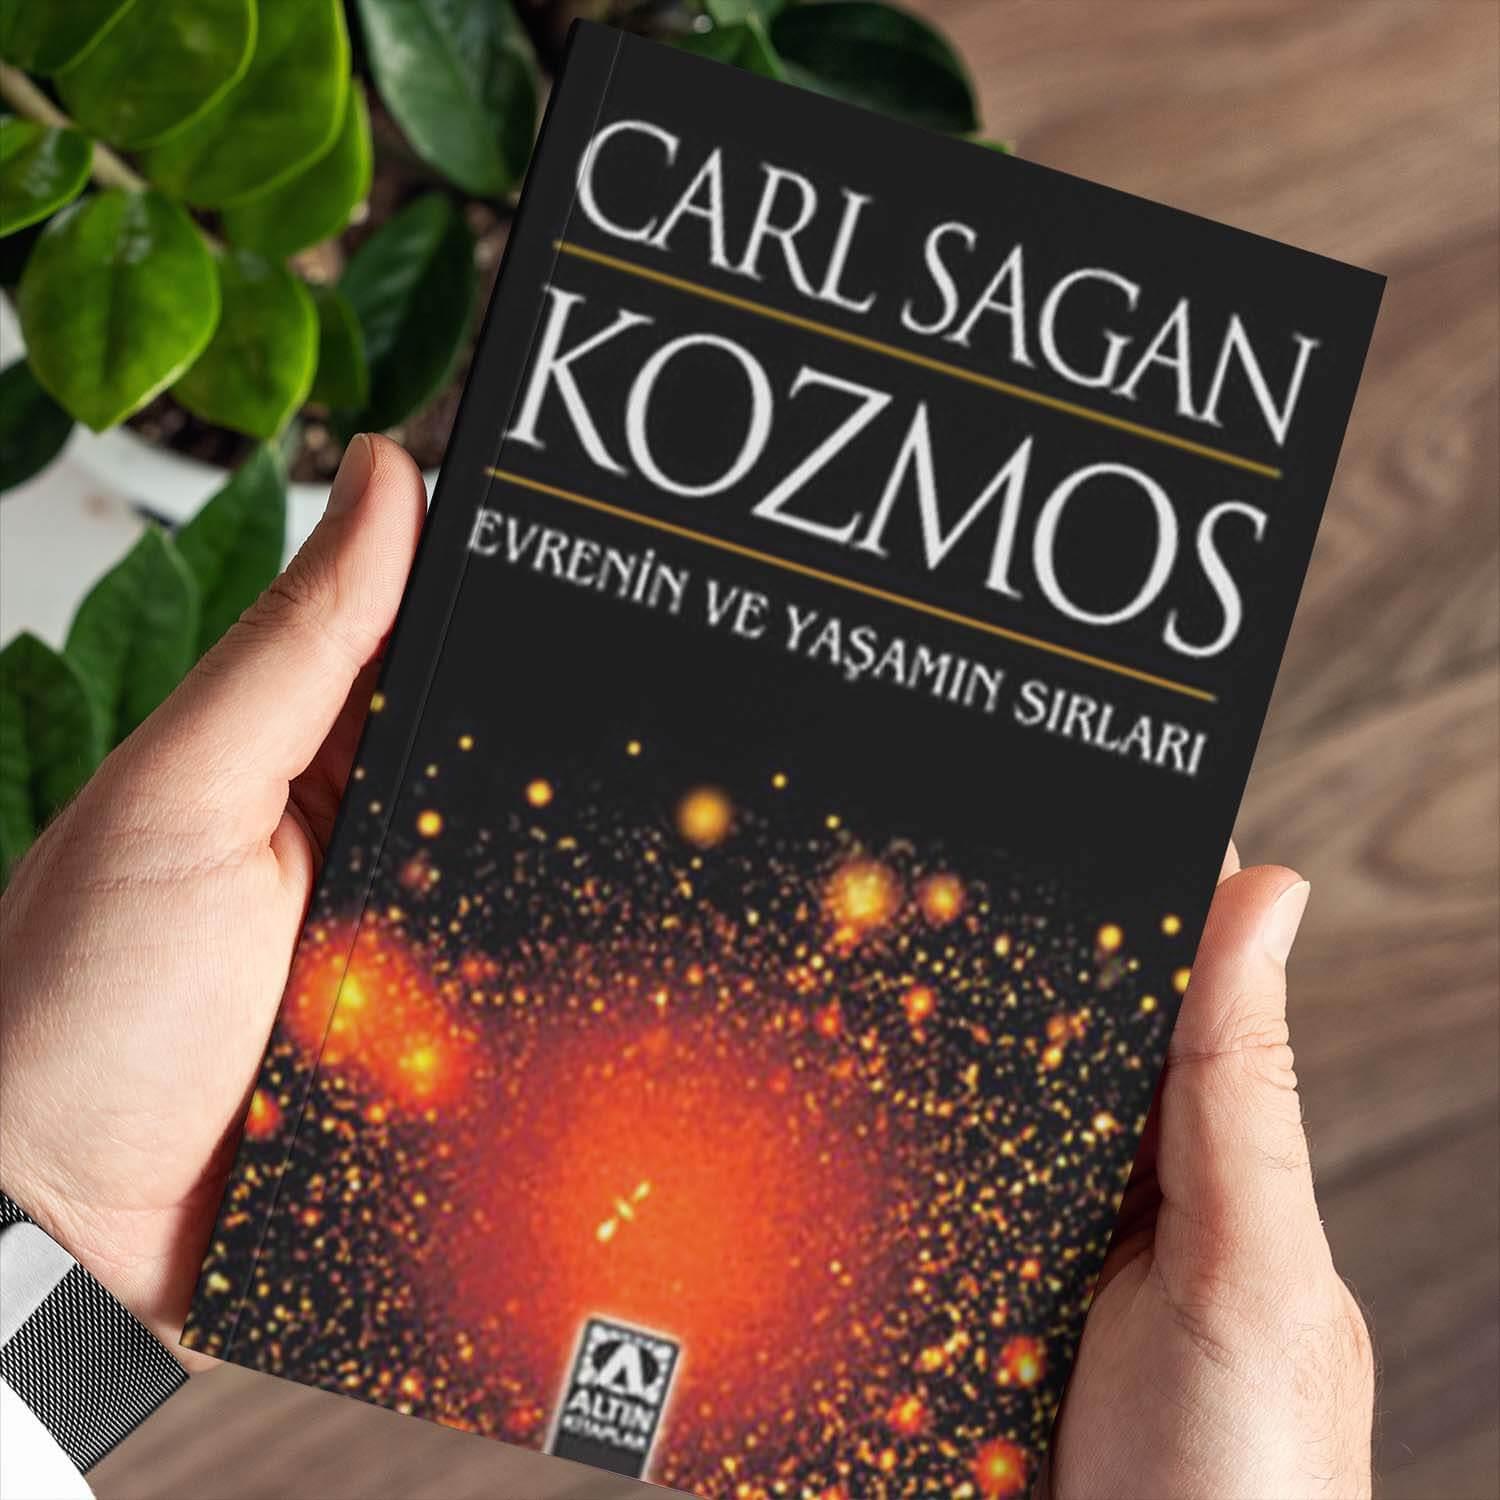 Kozmos - Carl Sagan görseli.